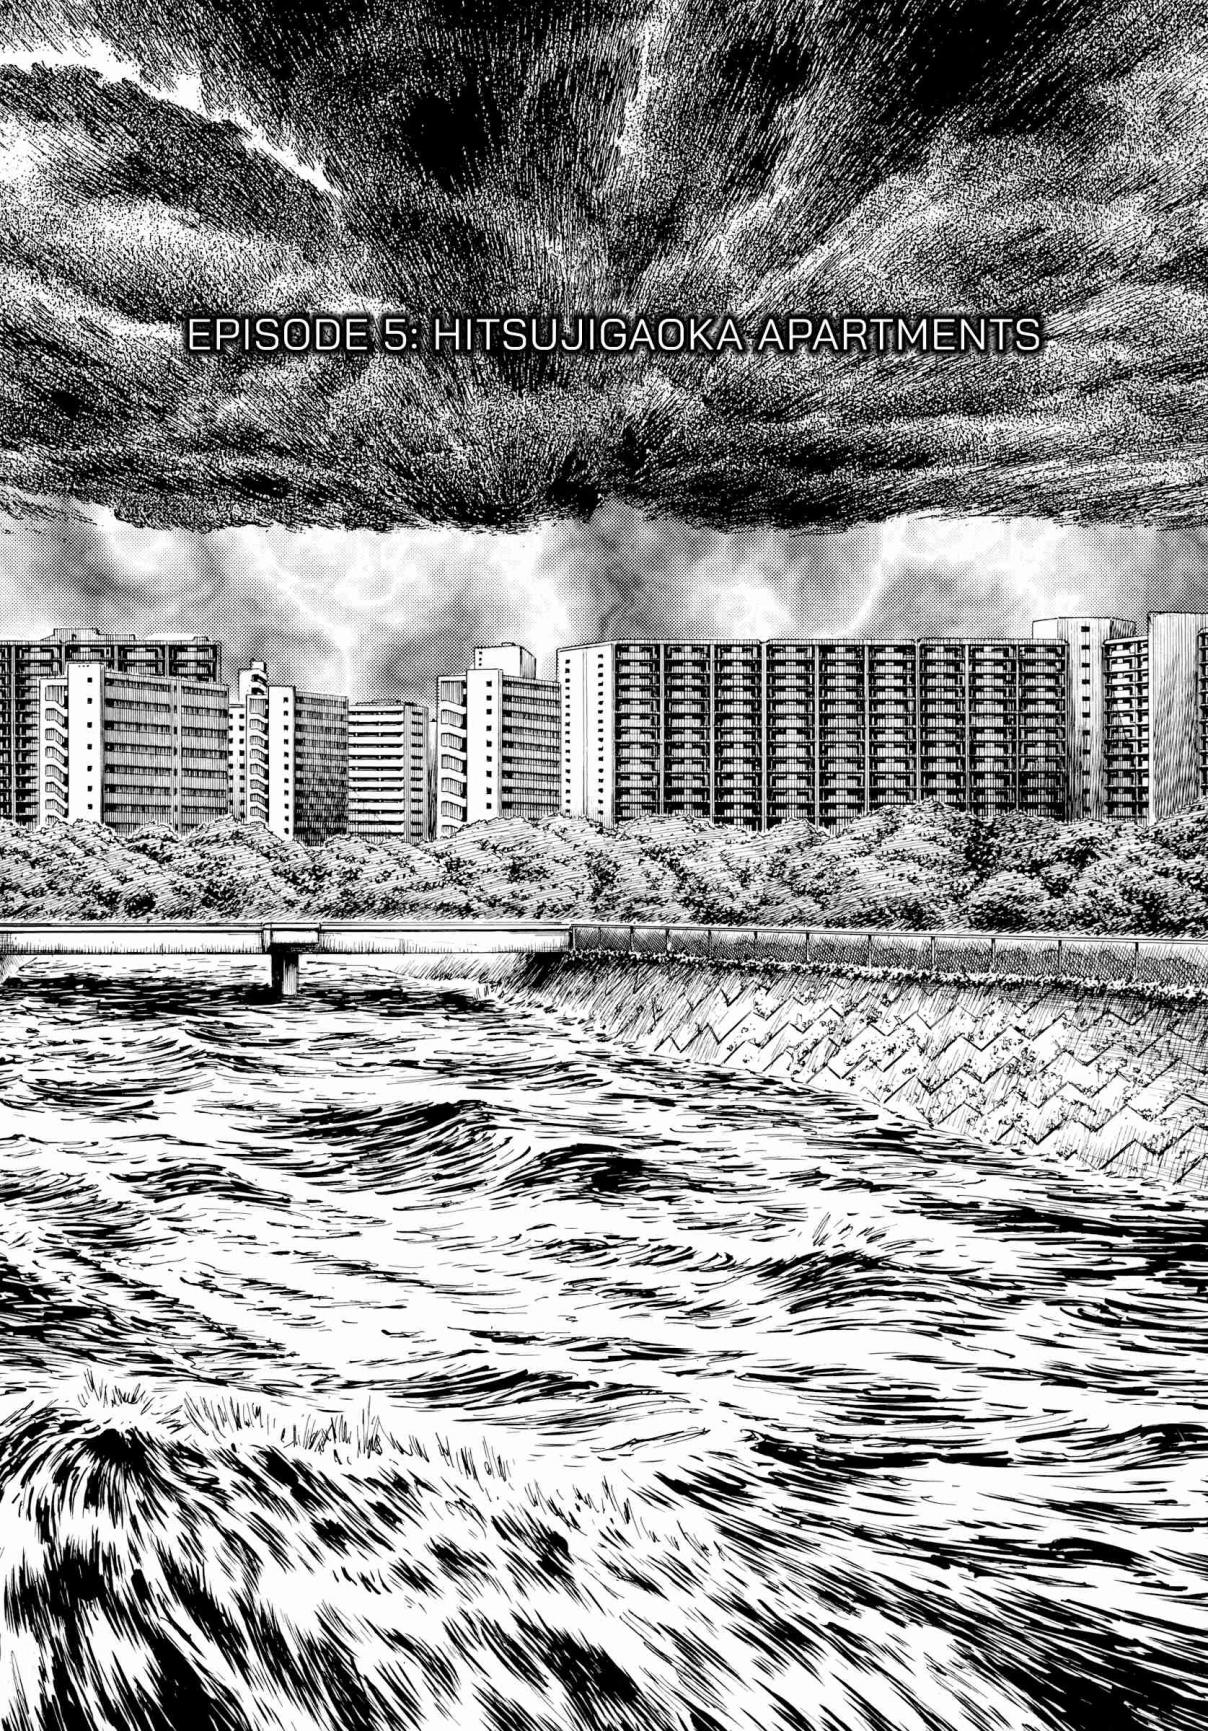 Rain Man Vol. 1 Ch. 5 Hitsujigaoka Apartments